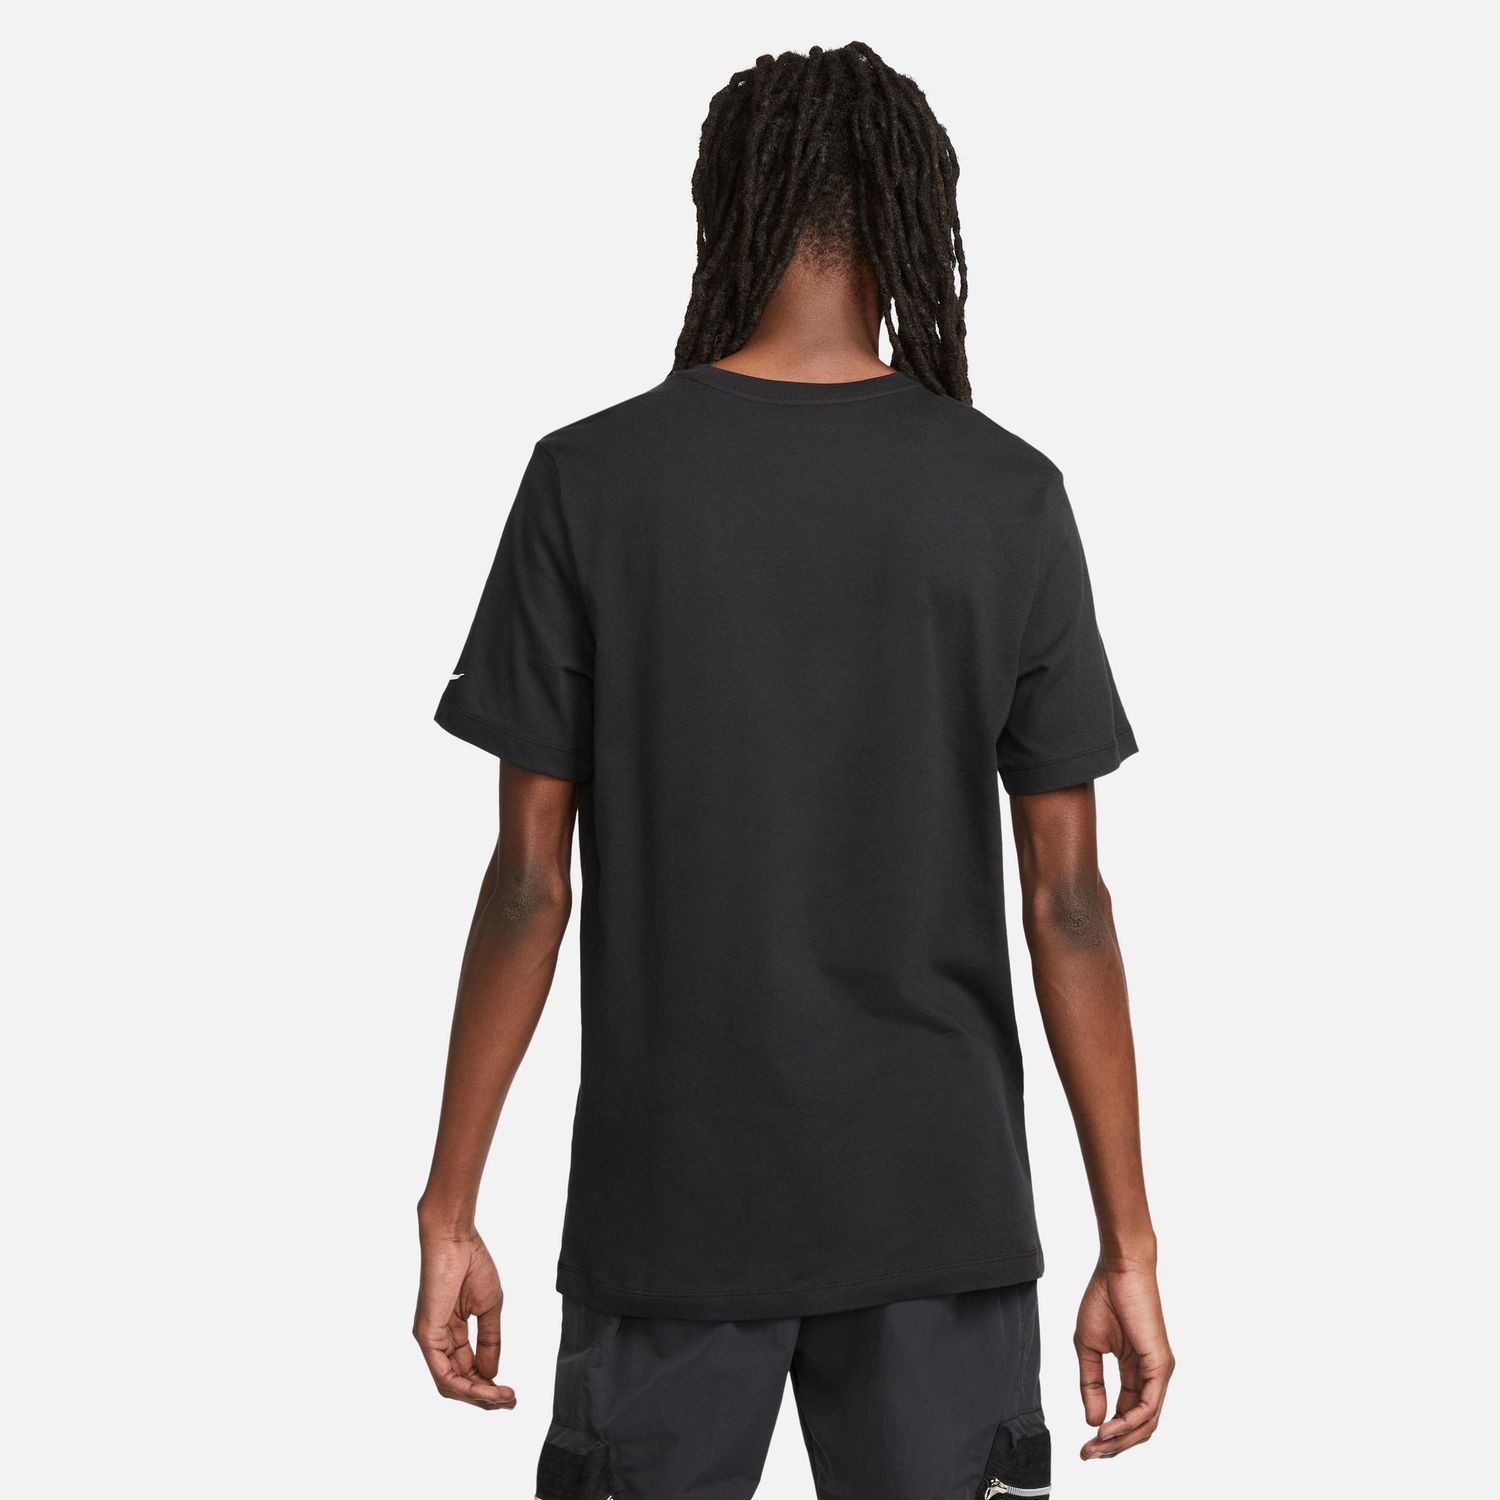 Nike Ja Morant T-Shirt